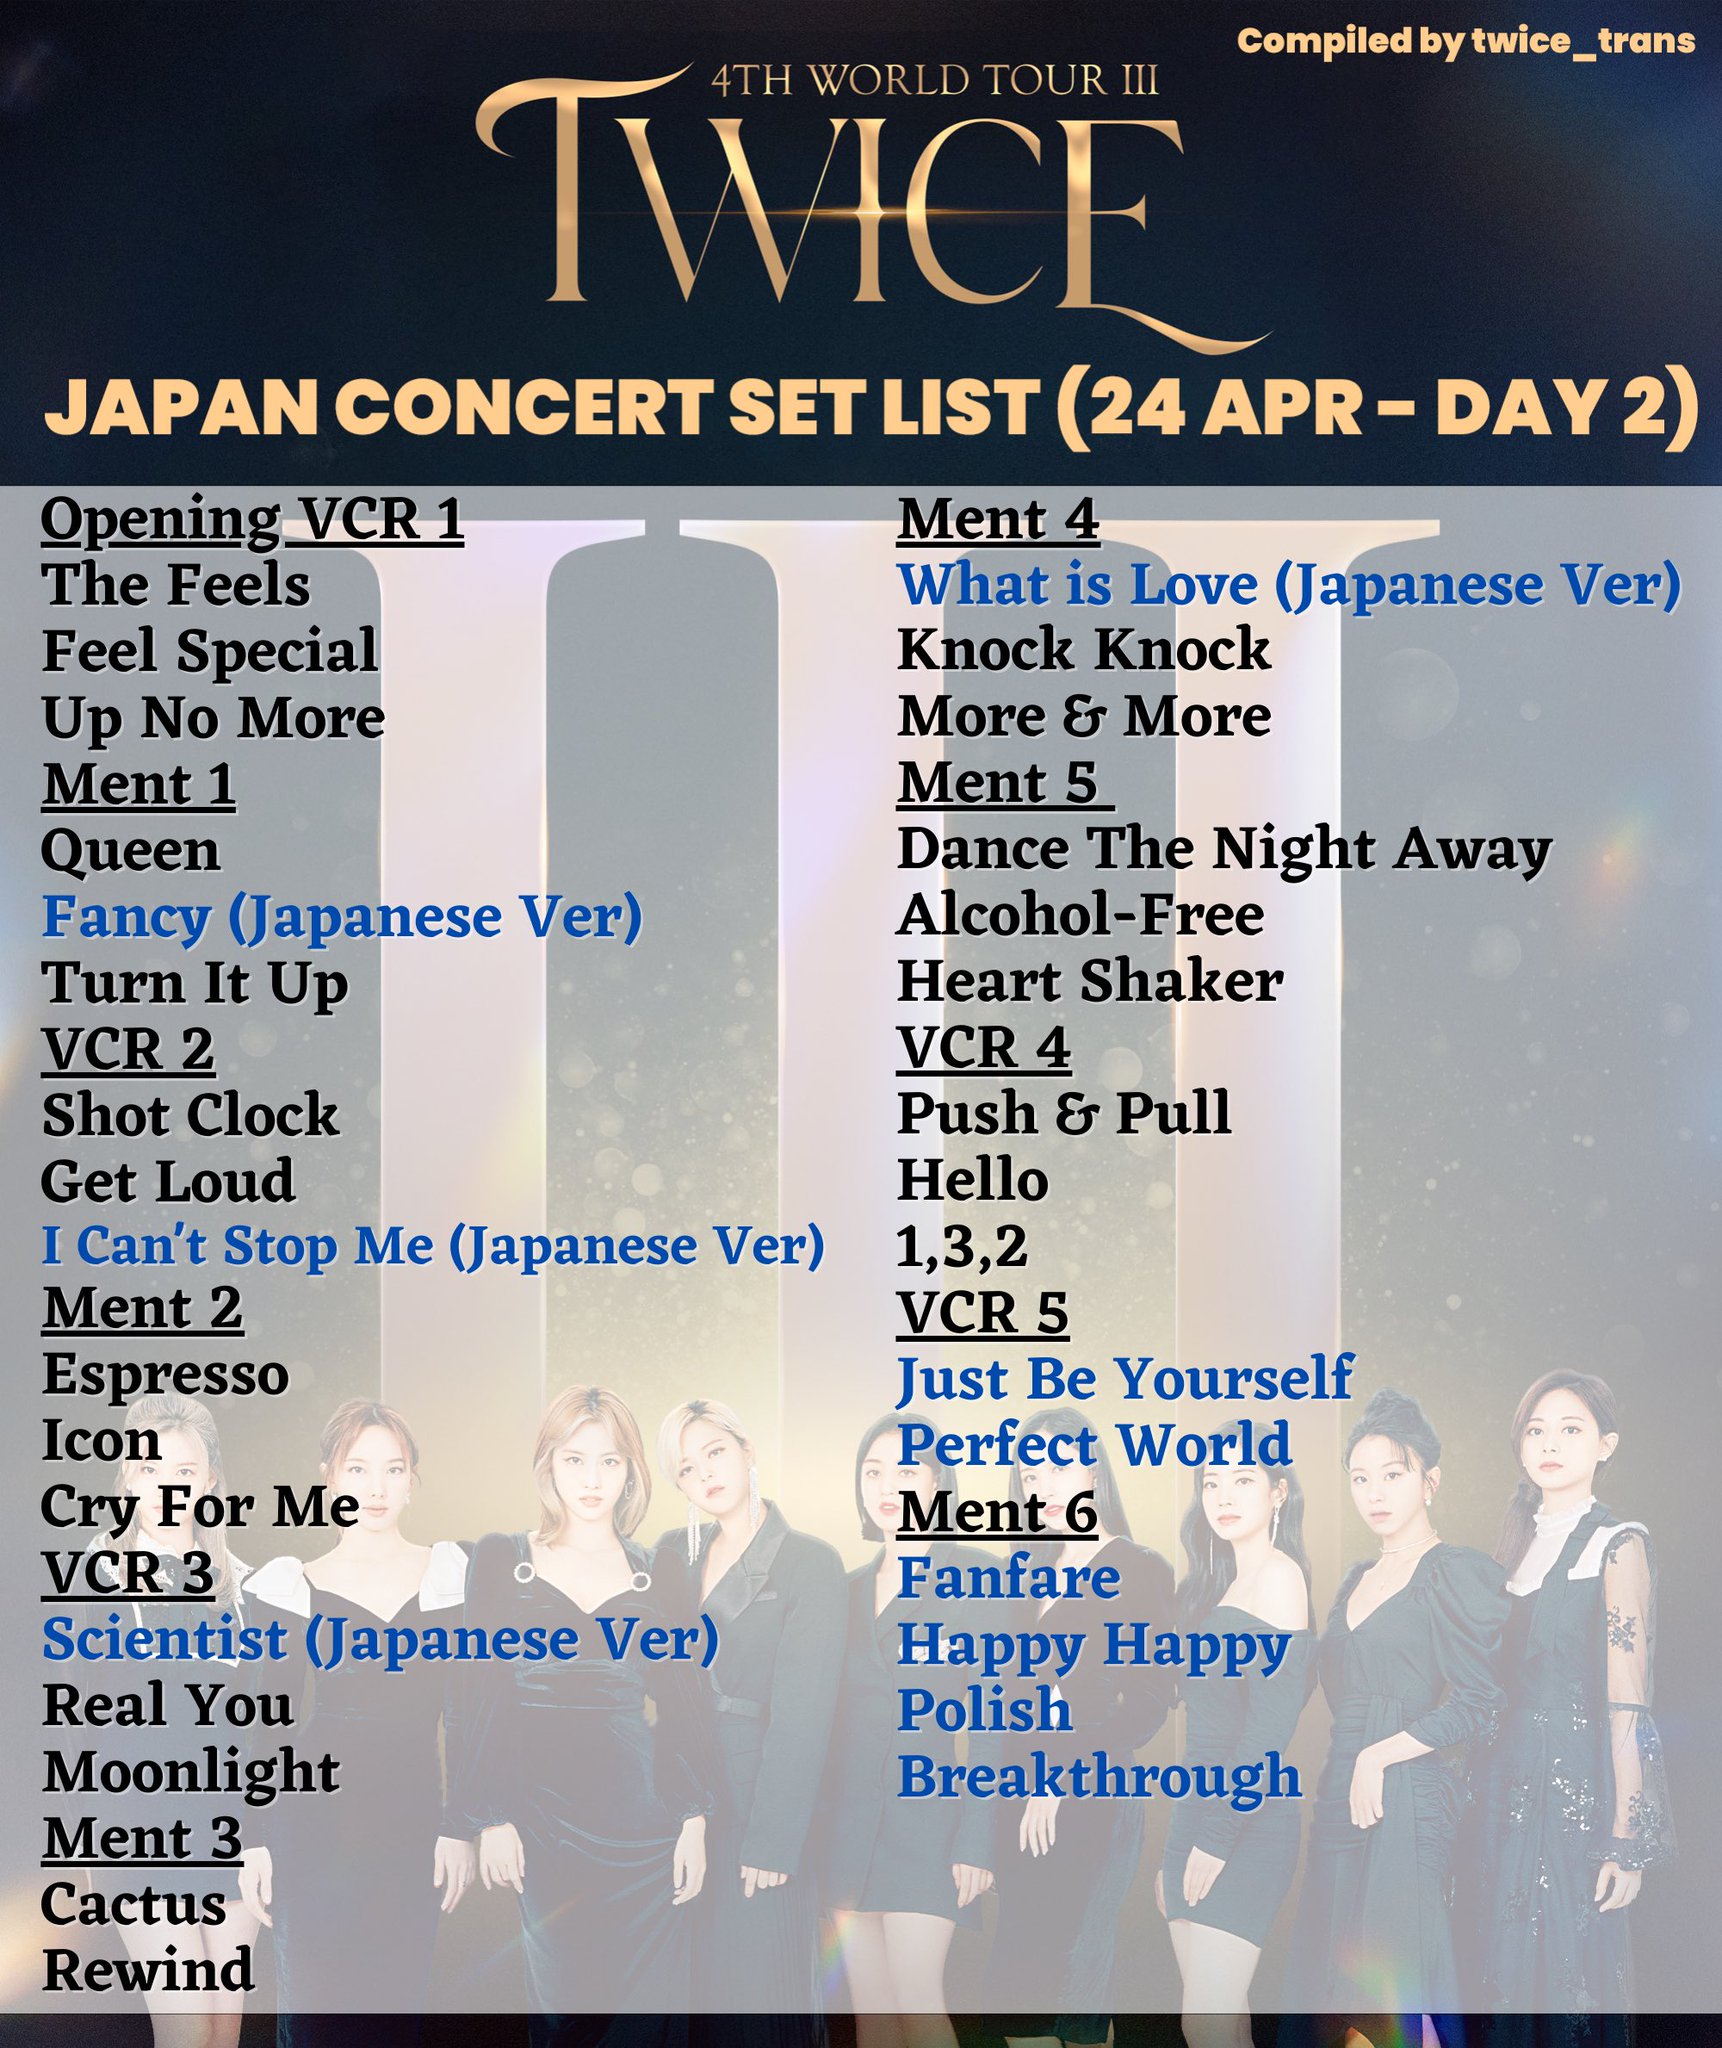 TWICE 4TH WORLD TOUR III SETLIST - SEUL DAY 2 - playlist by TWICE